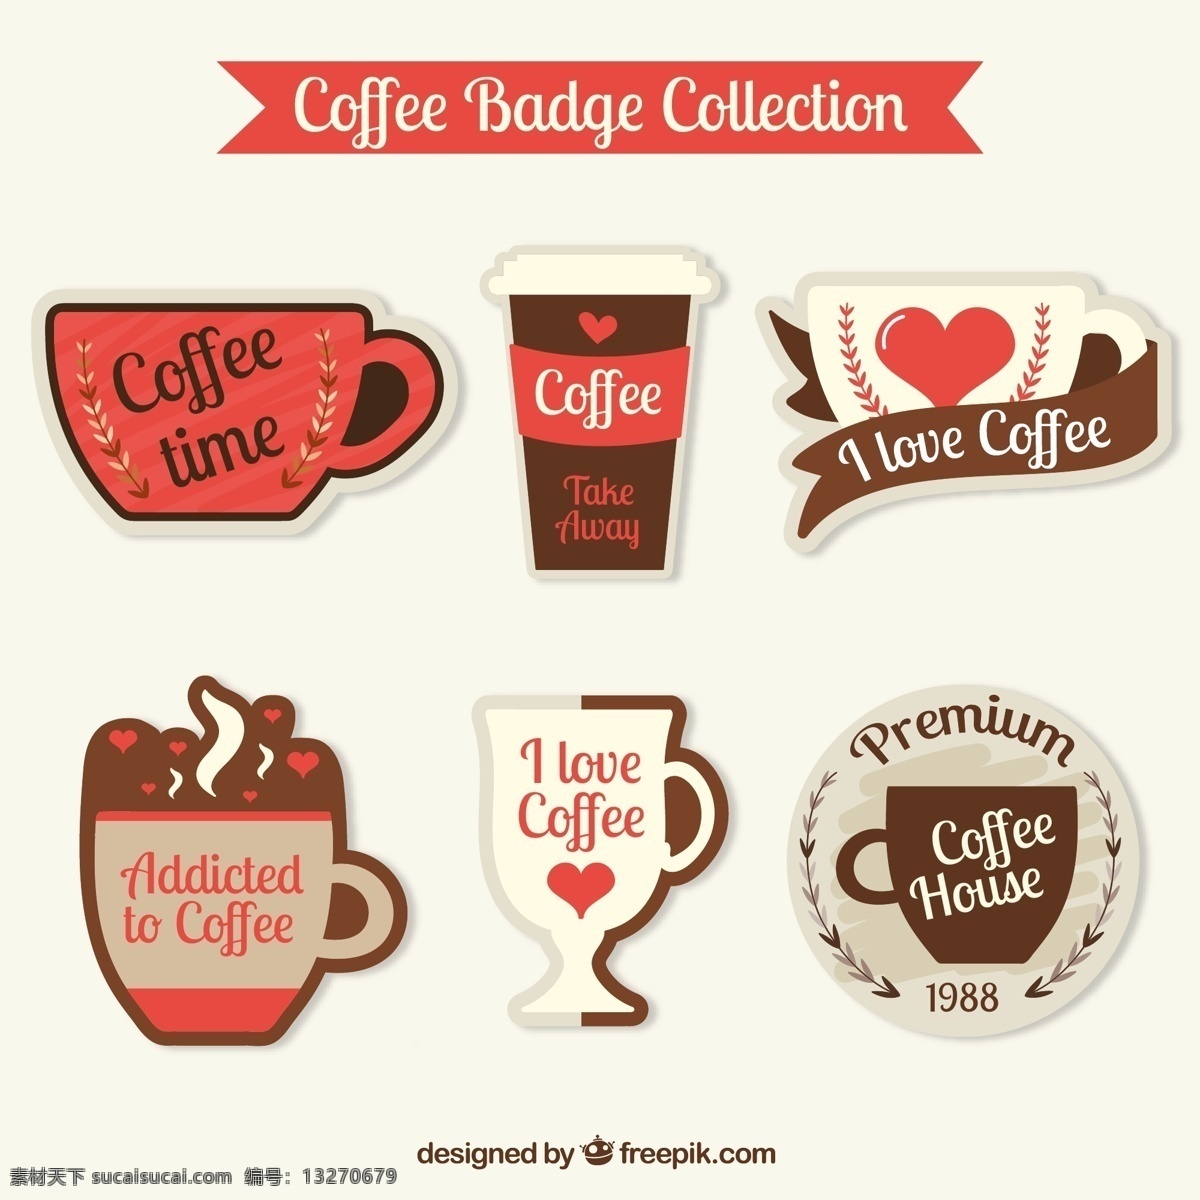 彩色咖啡徽章 6款彩色 咖啡徽章 矢量素材 咖啡杯 爱心 条幅 咖啡 矢量图 ai格式 淘宝界面设计